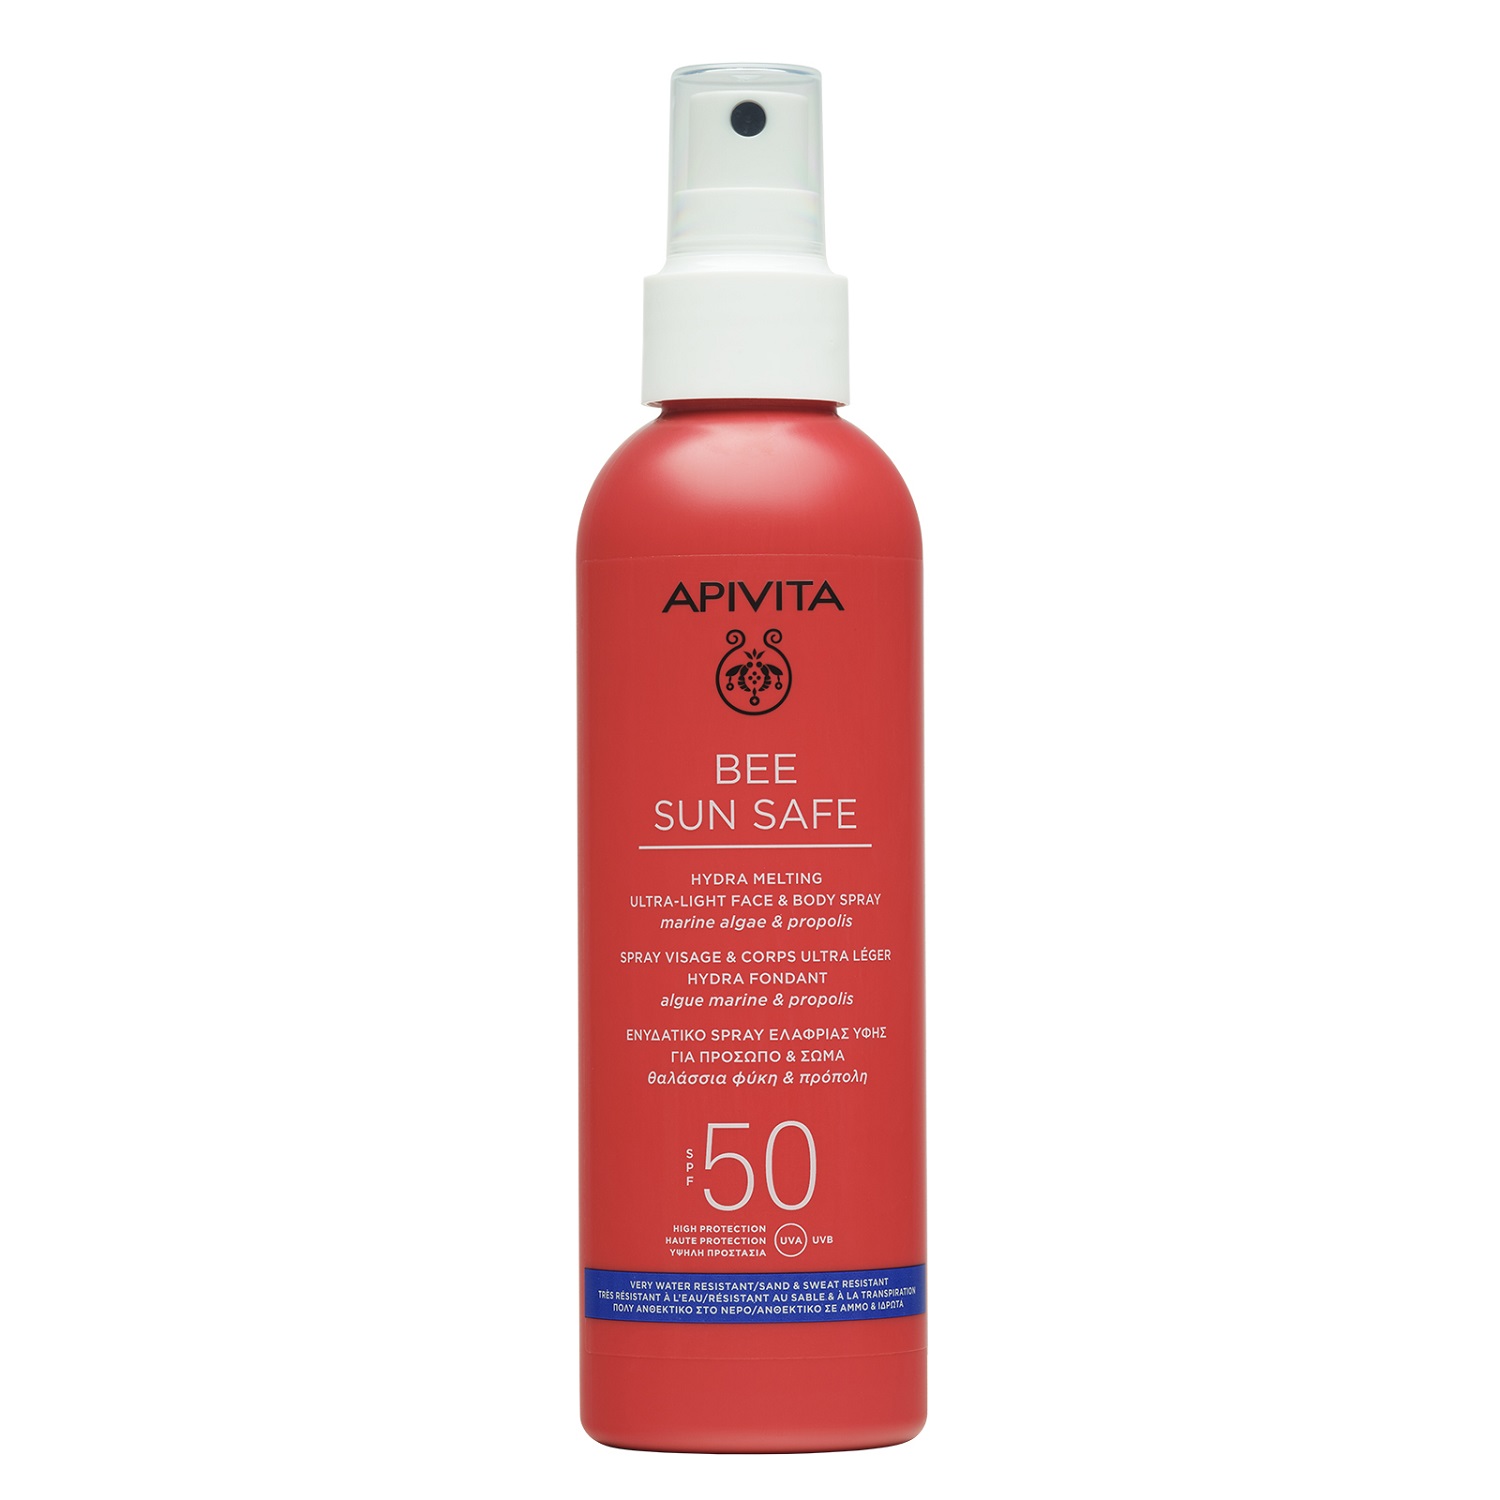 Apivita Солнцезащитный тающий ультра-легкий спрей для лица и тела SPF50, 200 мл (Apivita, Bee Sun Safe)